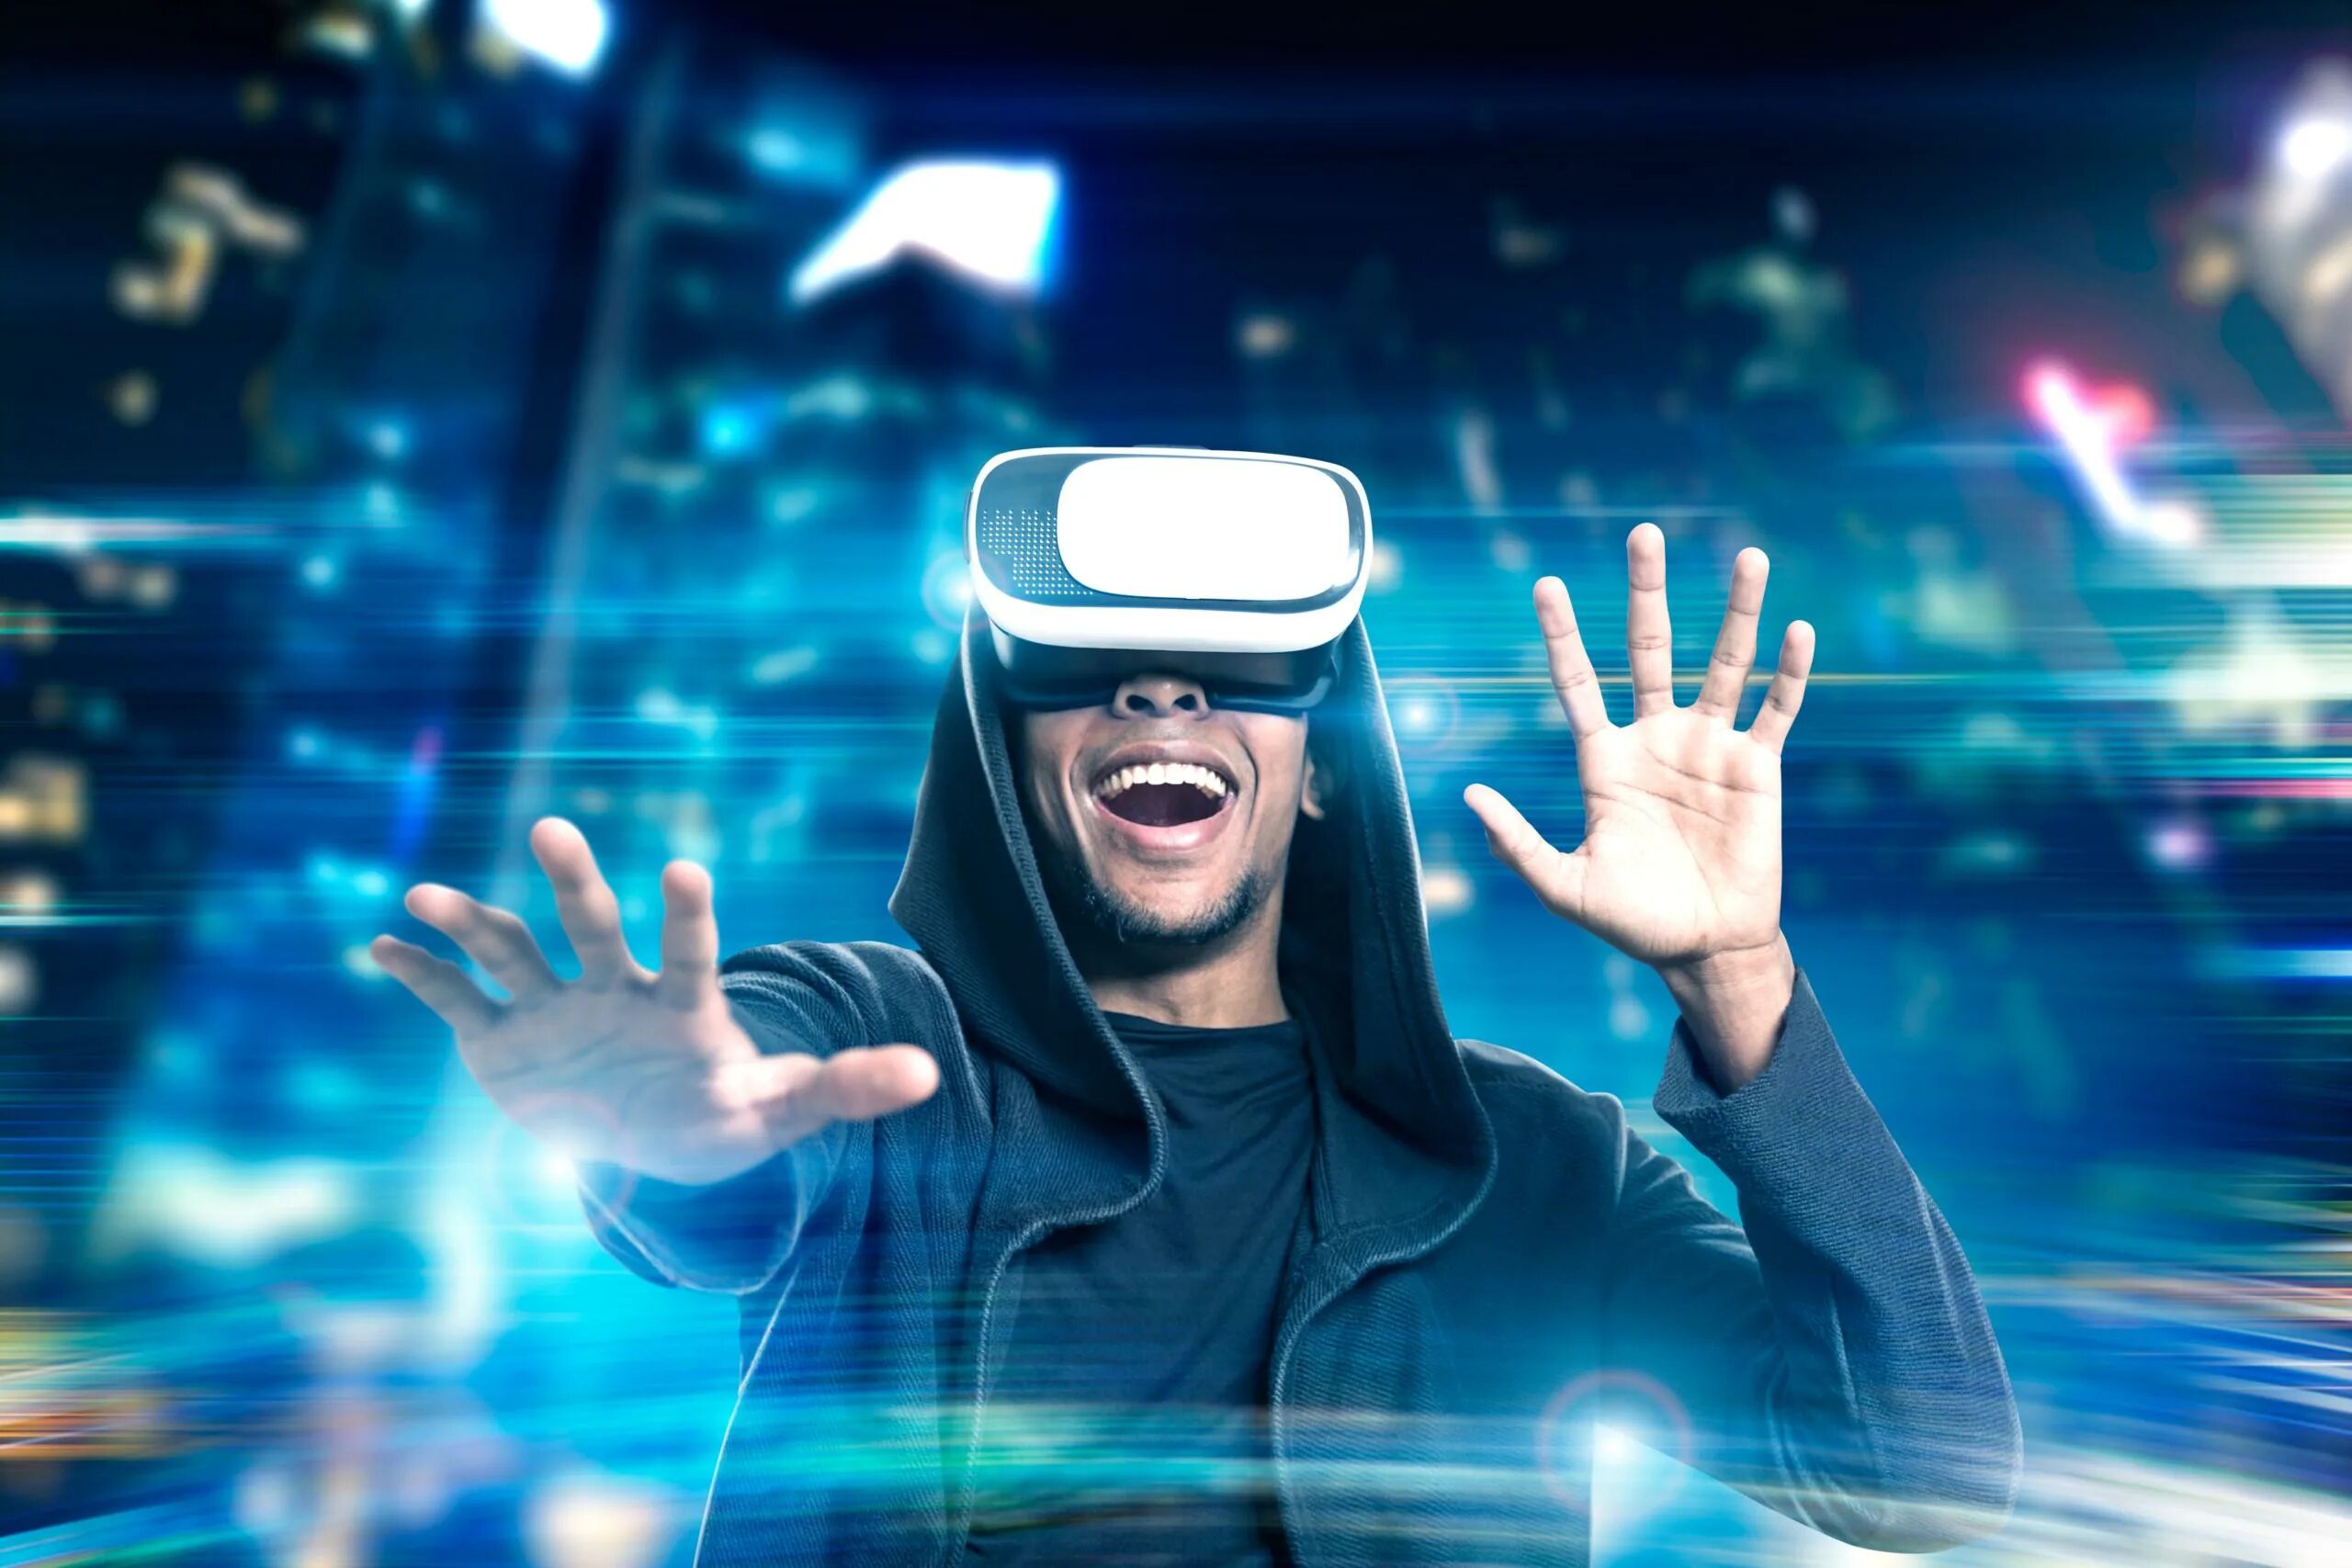 Виртуальный мир пэй. Визуальная реальность. VR виртуальная реальность. Виртуальнаяяреальность. Человек в виртуальной реальности.